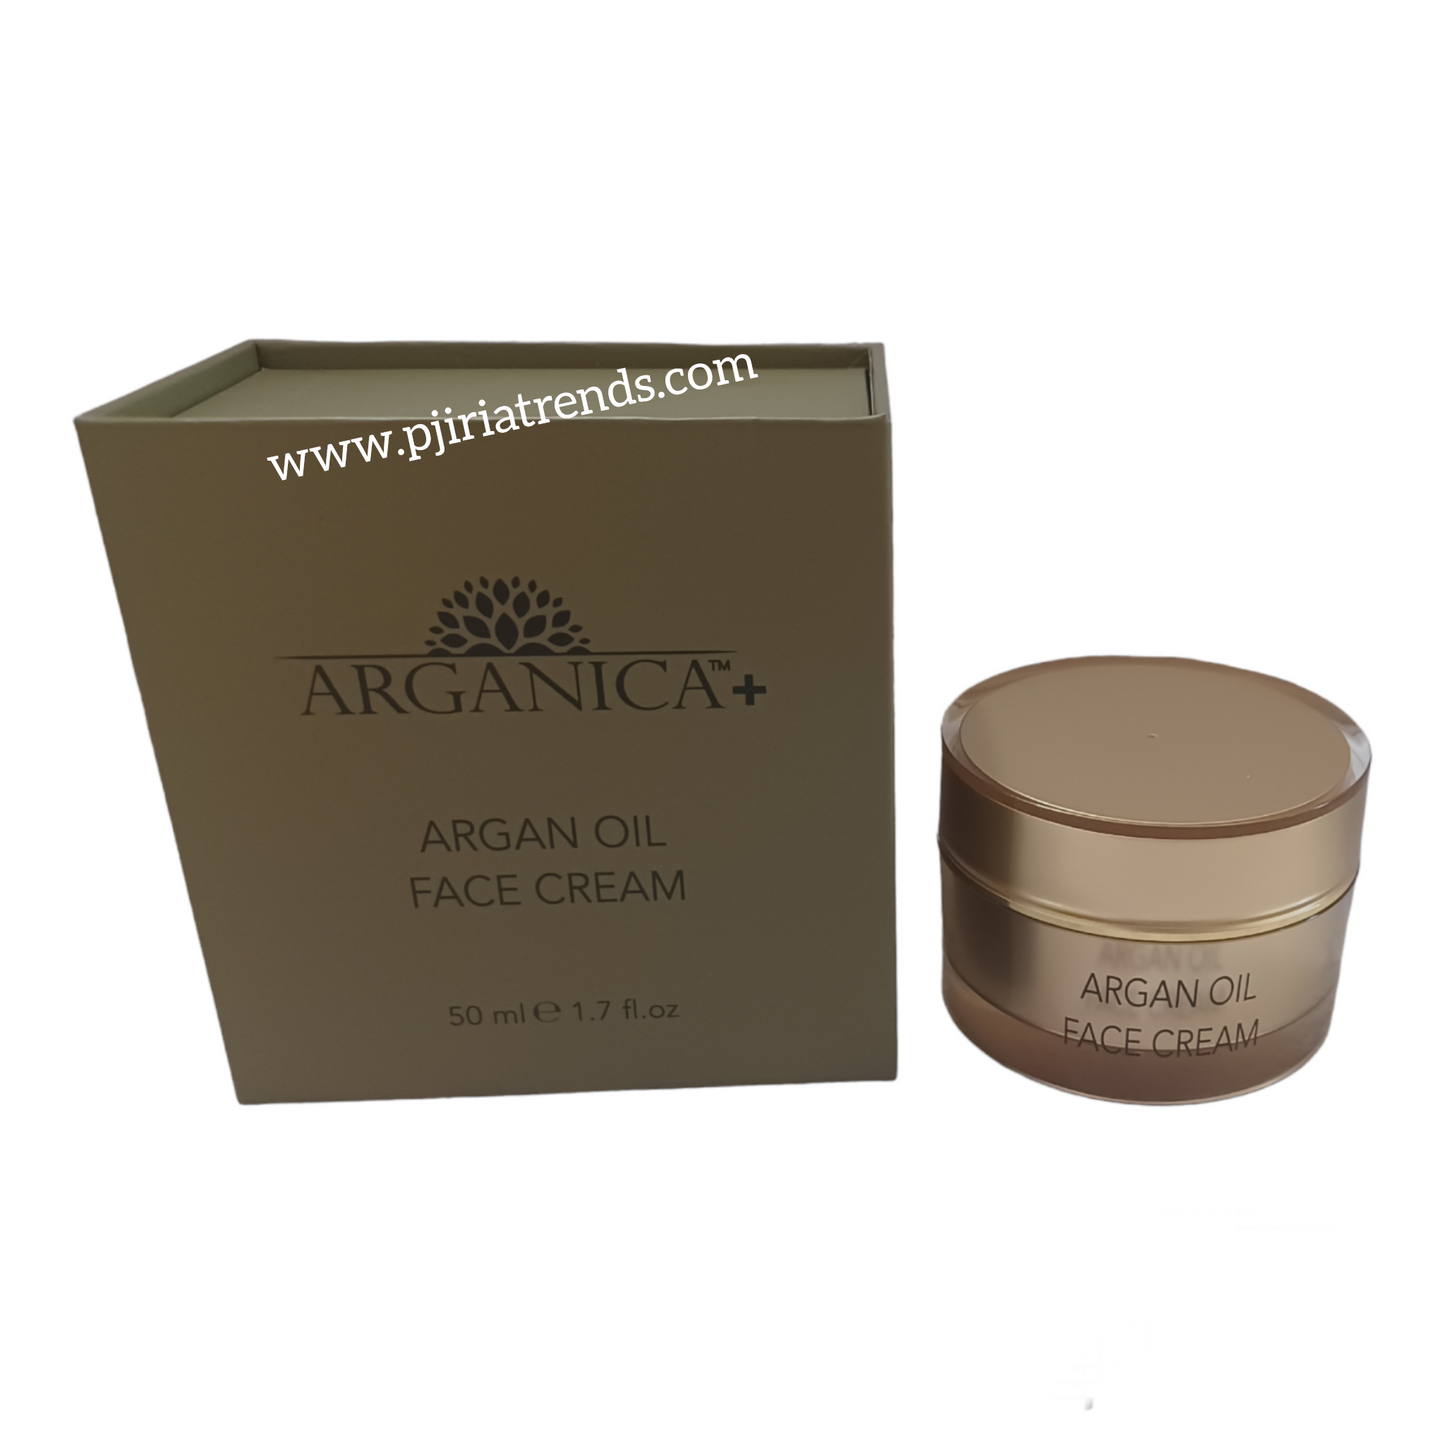 ARGANICA Argan Oil Face Cream